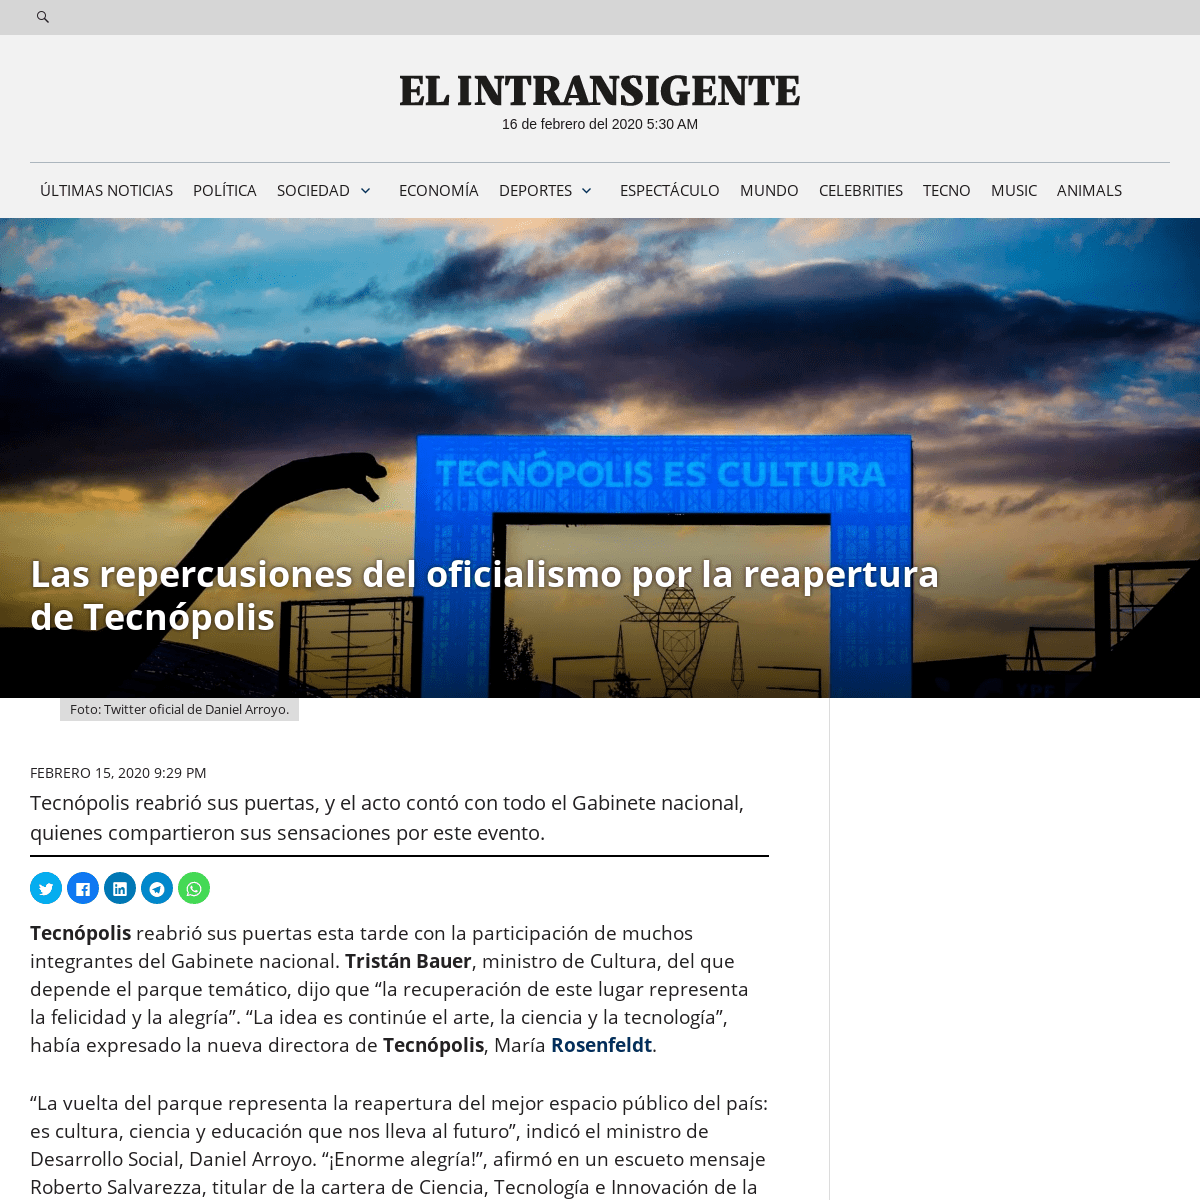 A complete backup of elintransigente.com/politica/2020/02/15/las-repercusiones-del-oficialismo-por-la-reapertura-de-tecnopolis/